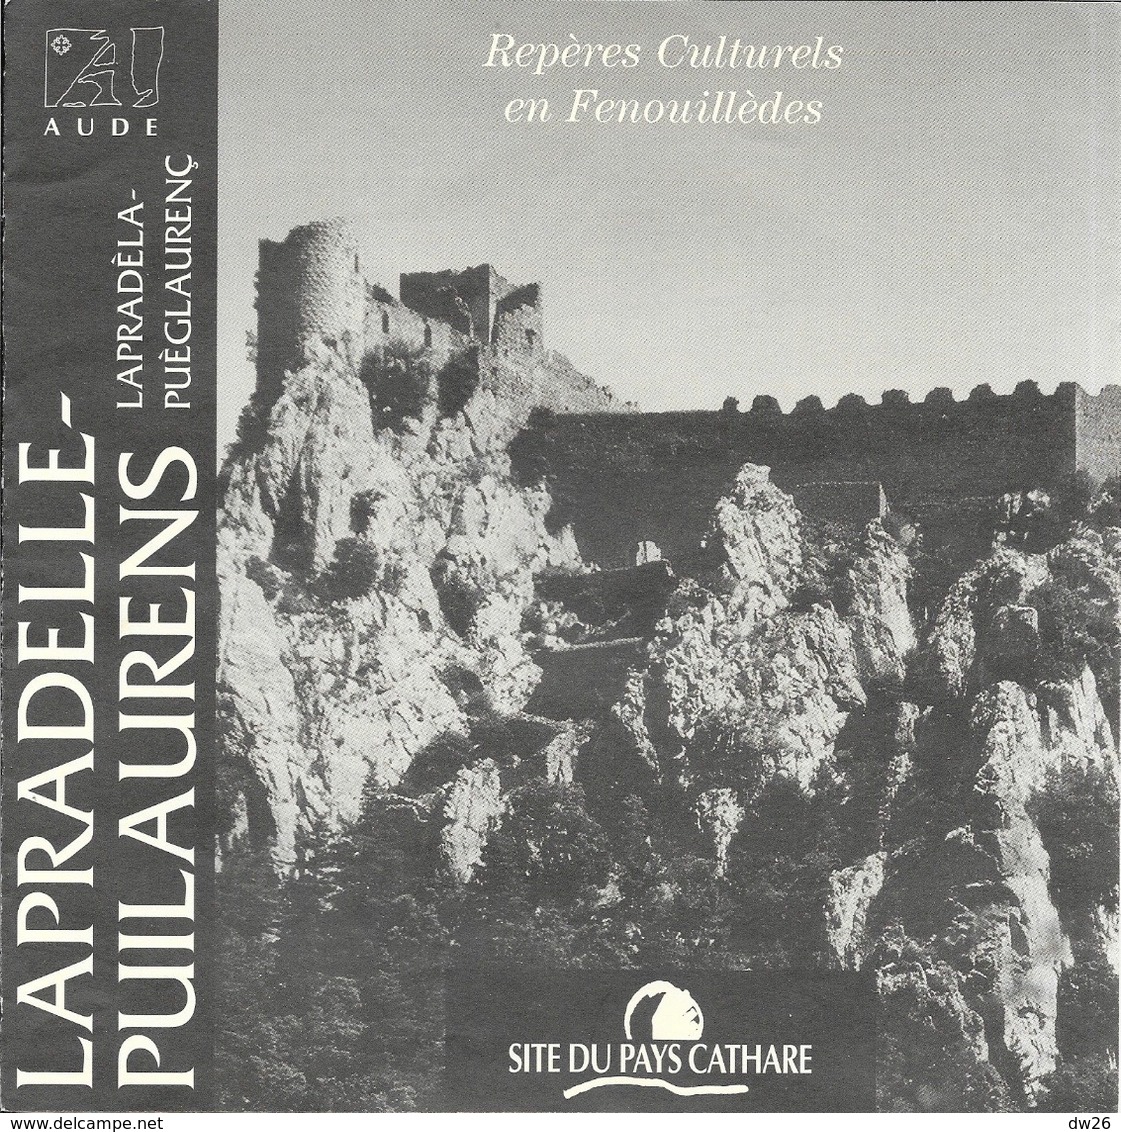 Lot de 6 dépliants et plans: Site du Pays Cathare dans l'Aude, St-Hilaire, Lastours, Arques, Puilaurens...